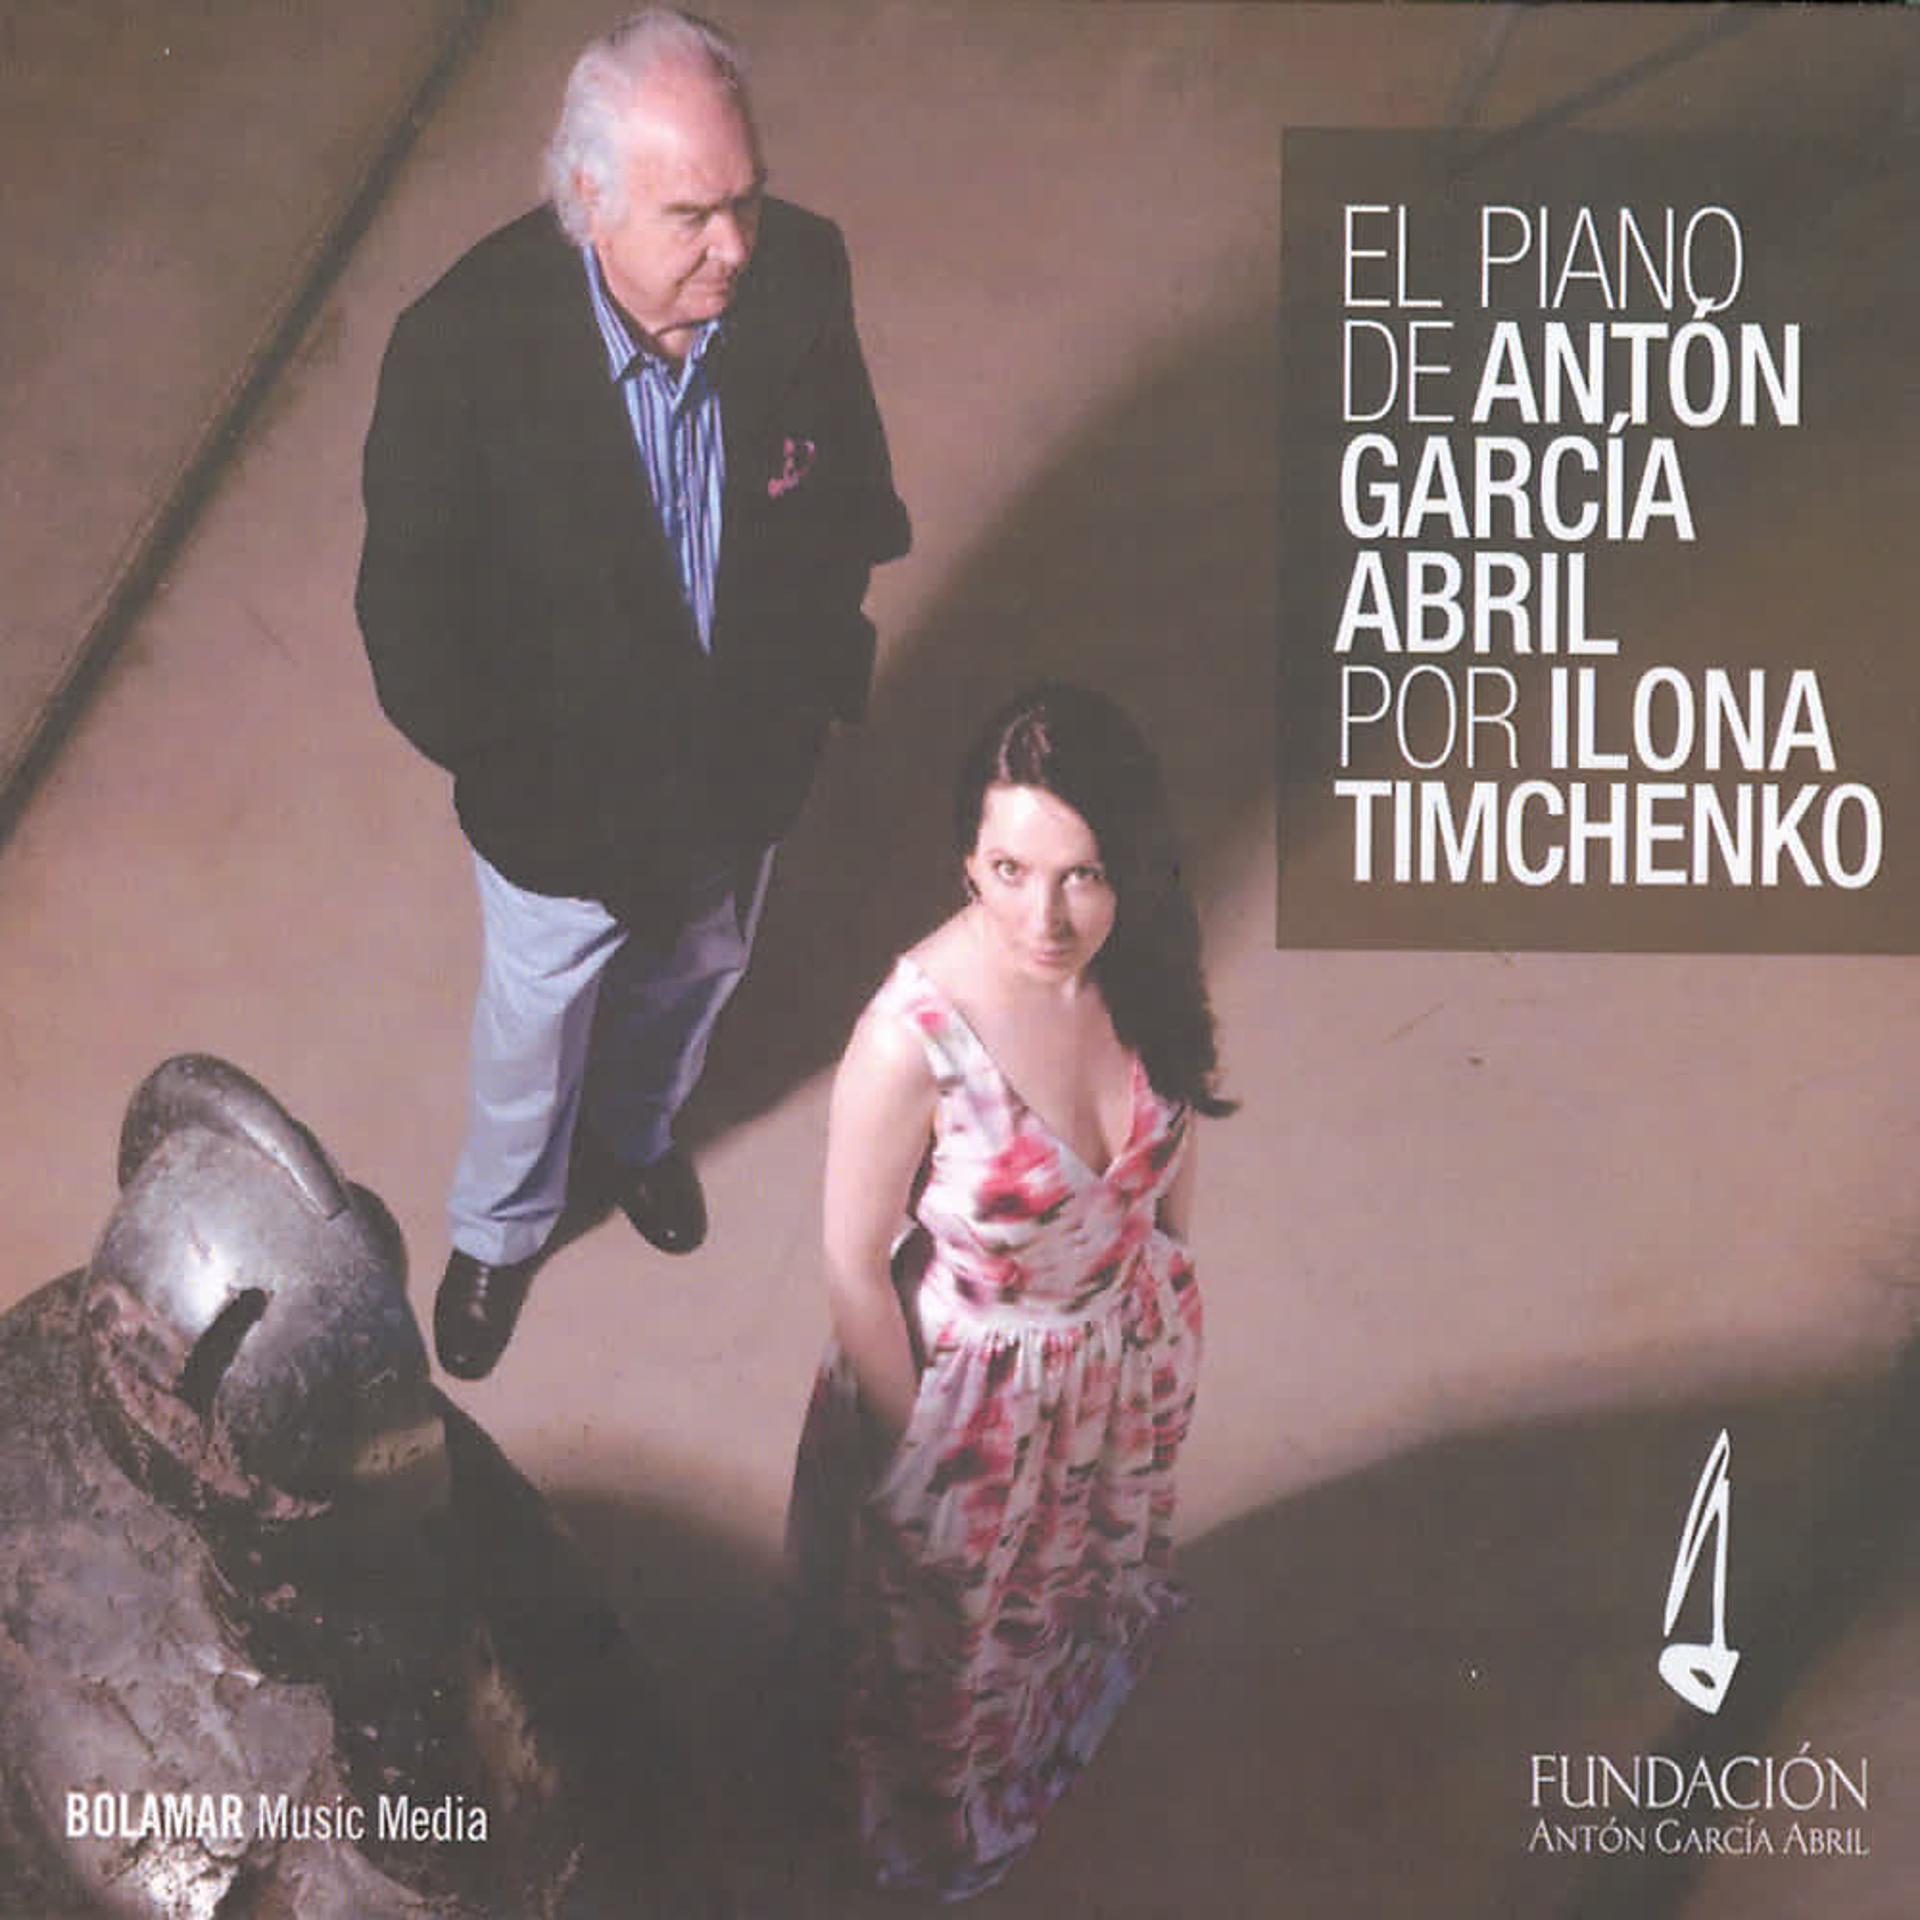 Постер альбома El Piano de Antón García Abril por Ilona Timchenko